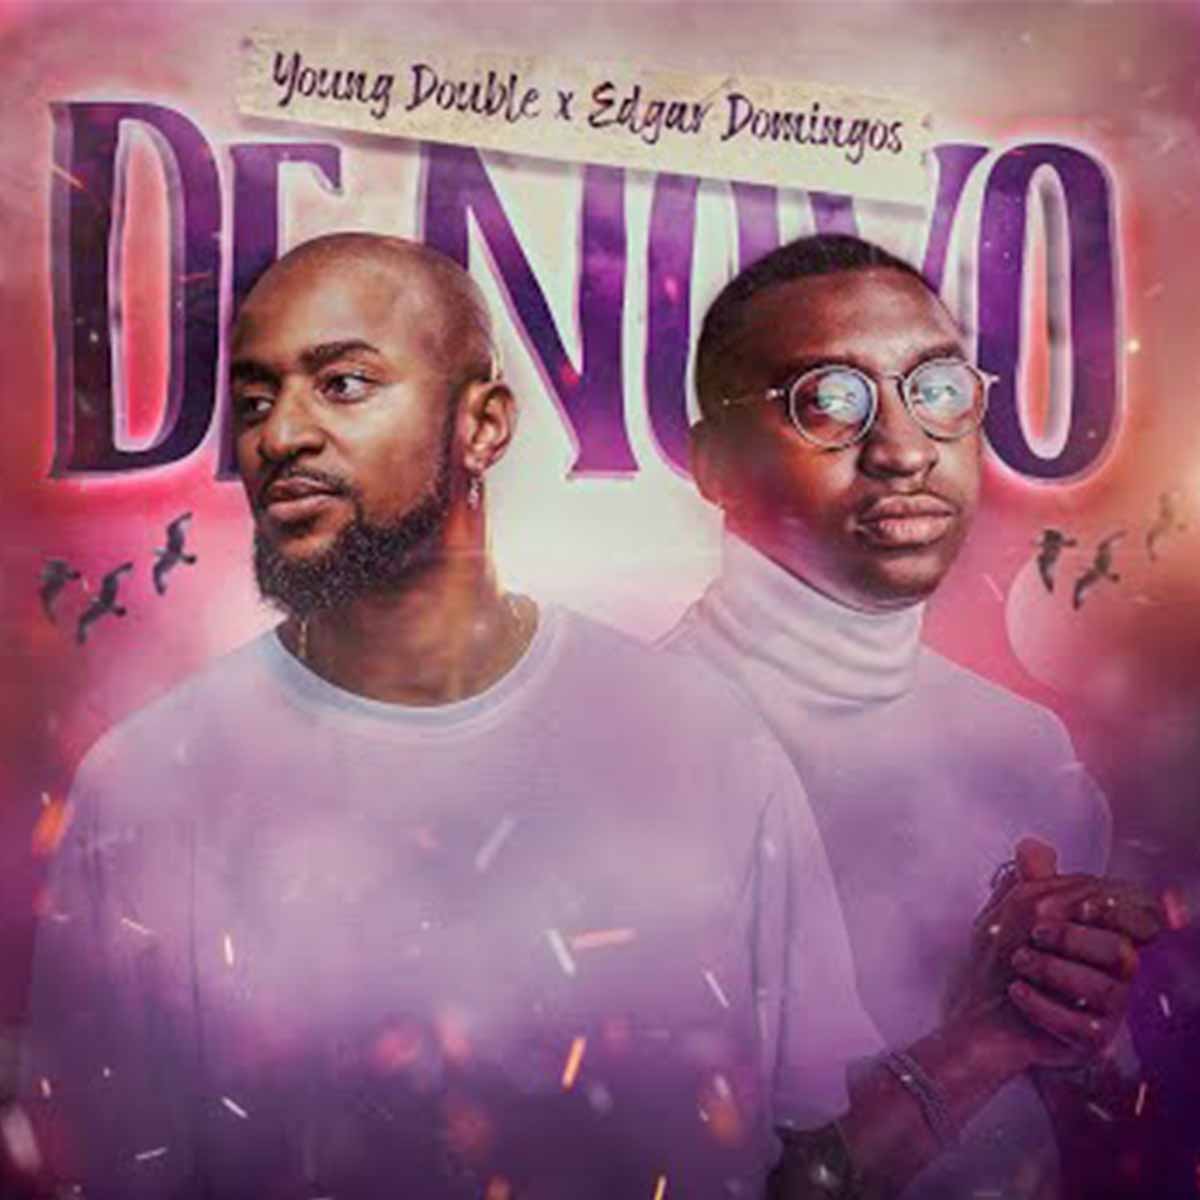 Young Double – De Novo (feat. Edgar Domingos)